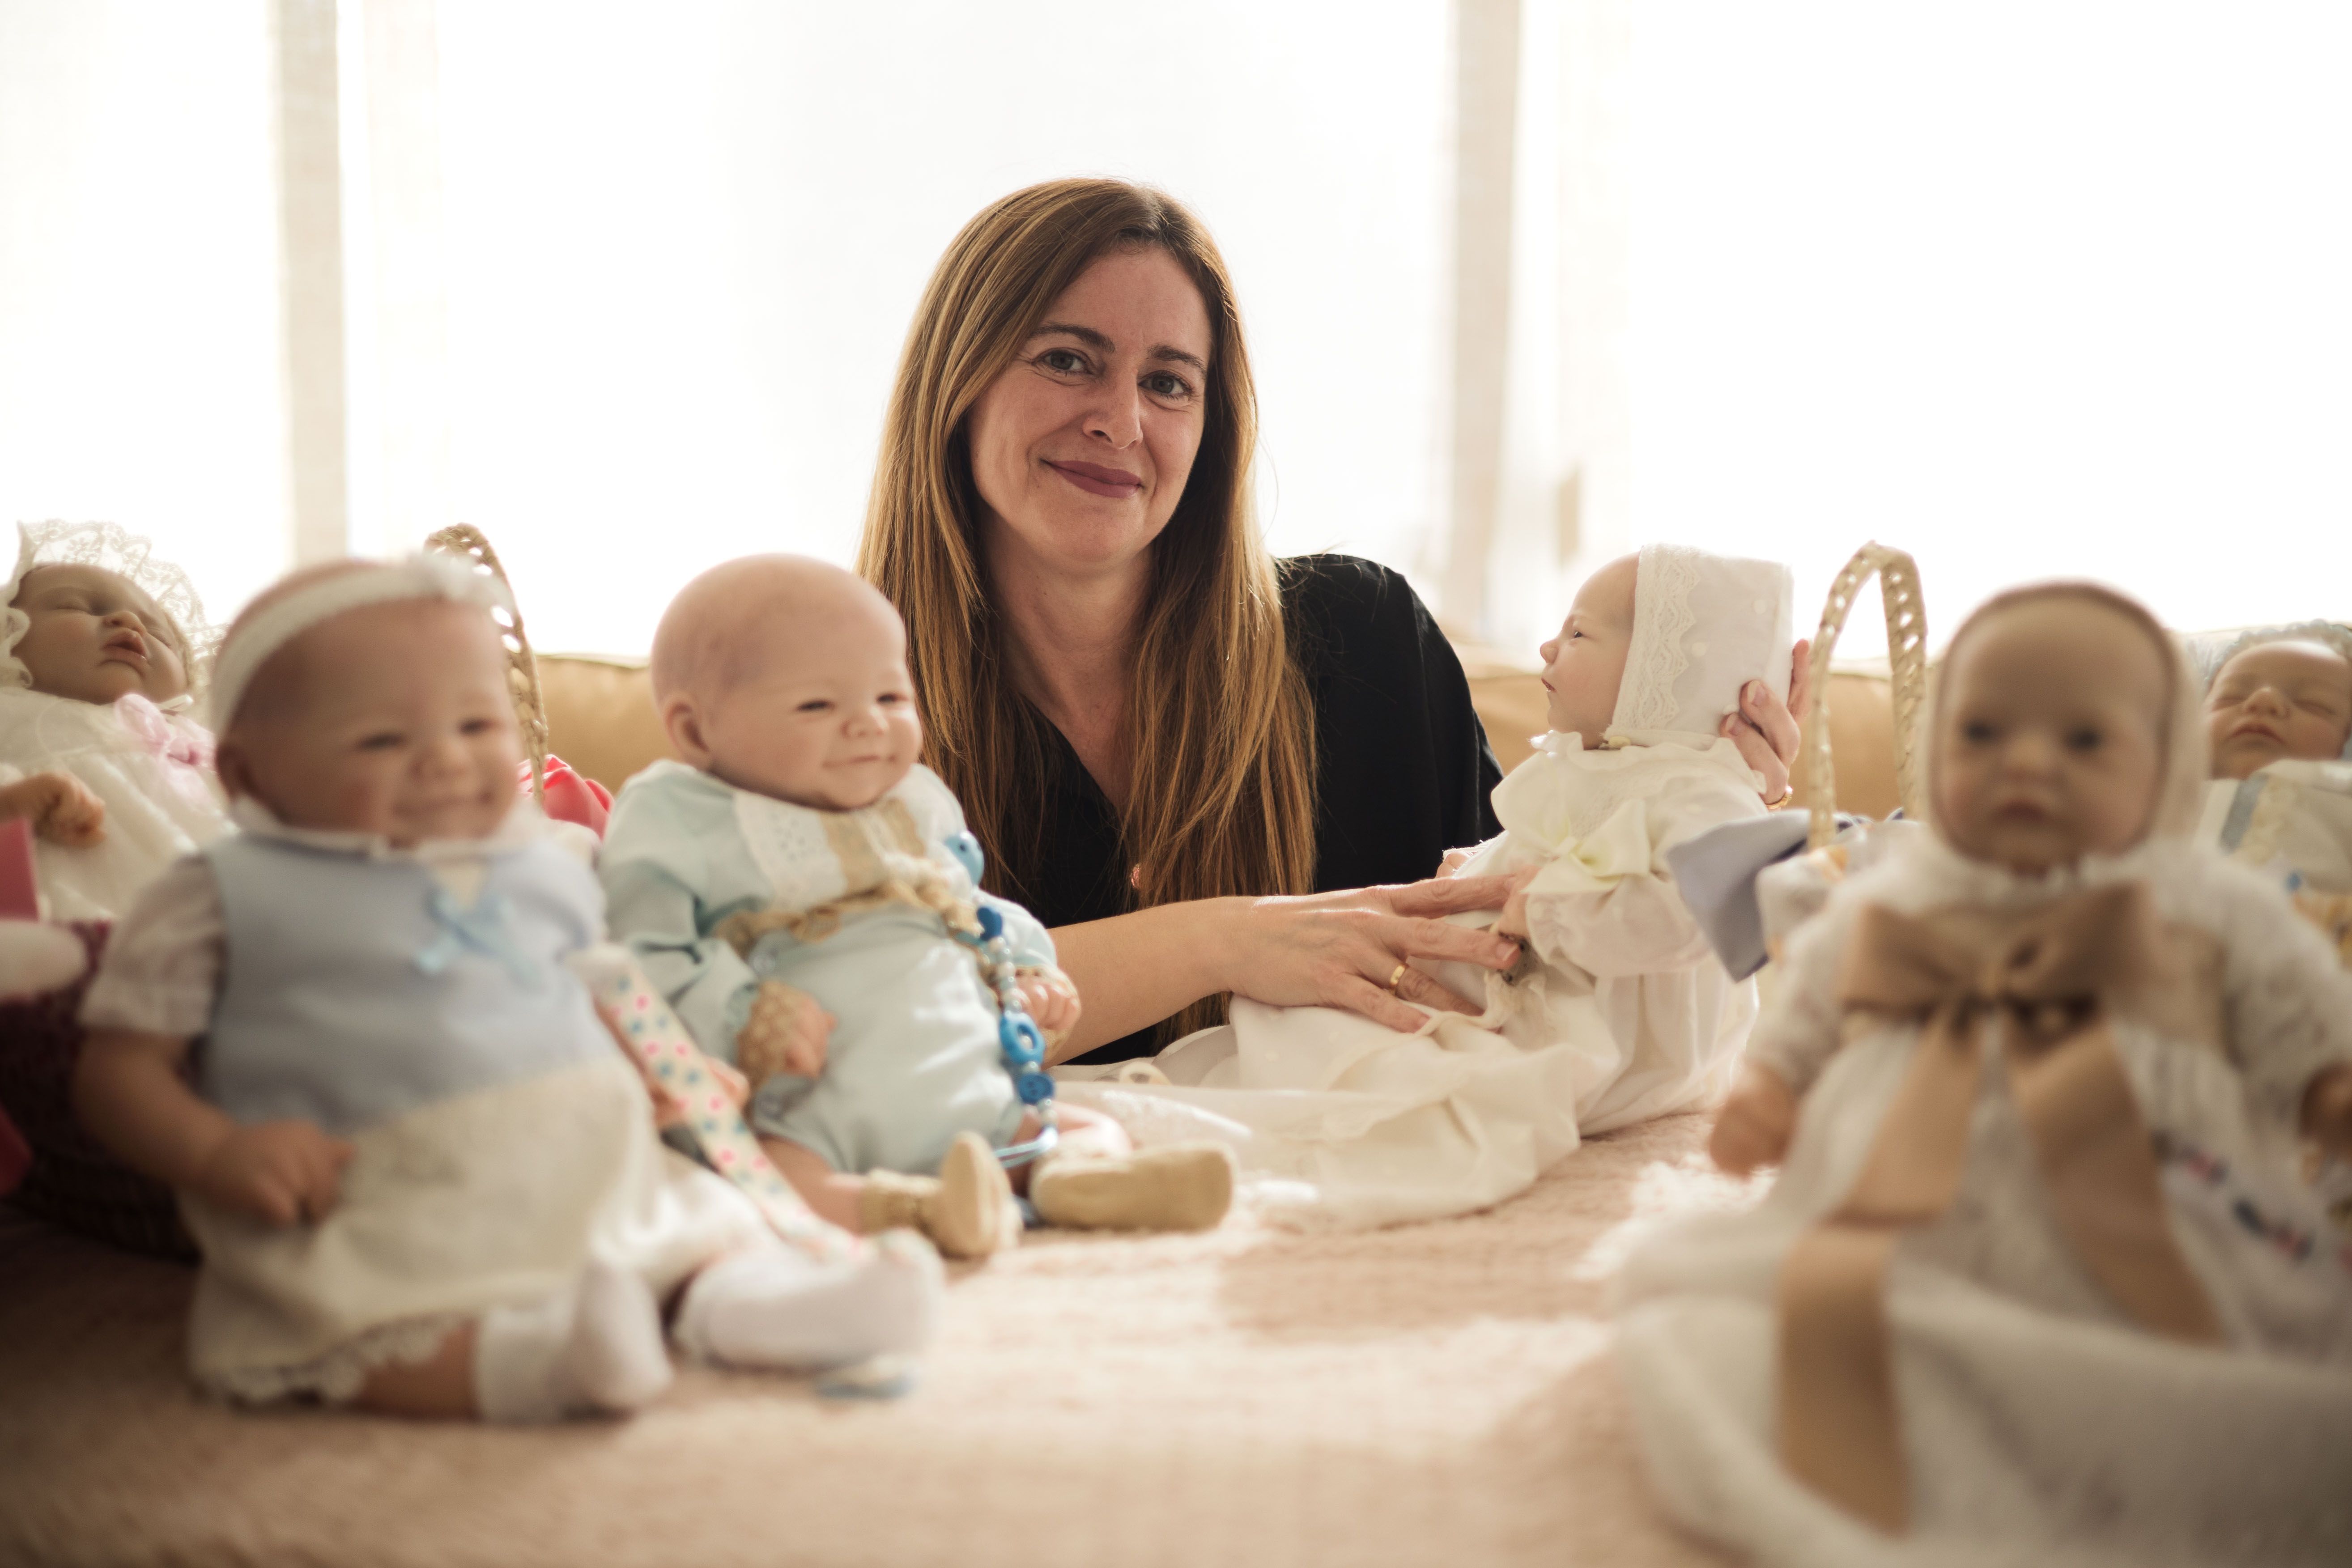 La jerezana Cristina Recio es una artista Reborn que crea bebés hiperrealistas que "impresionan".